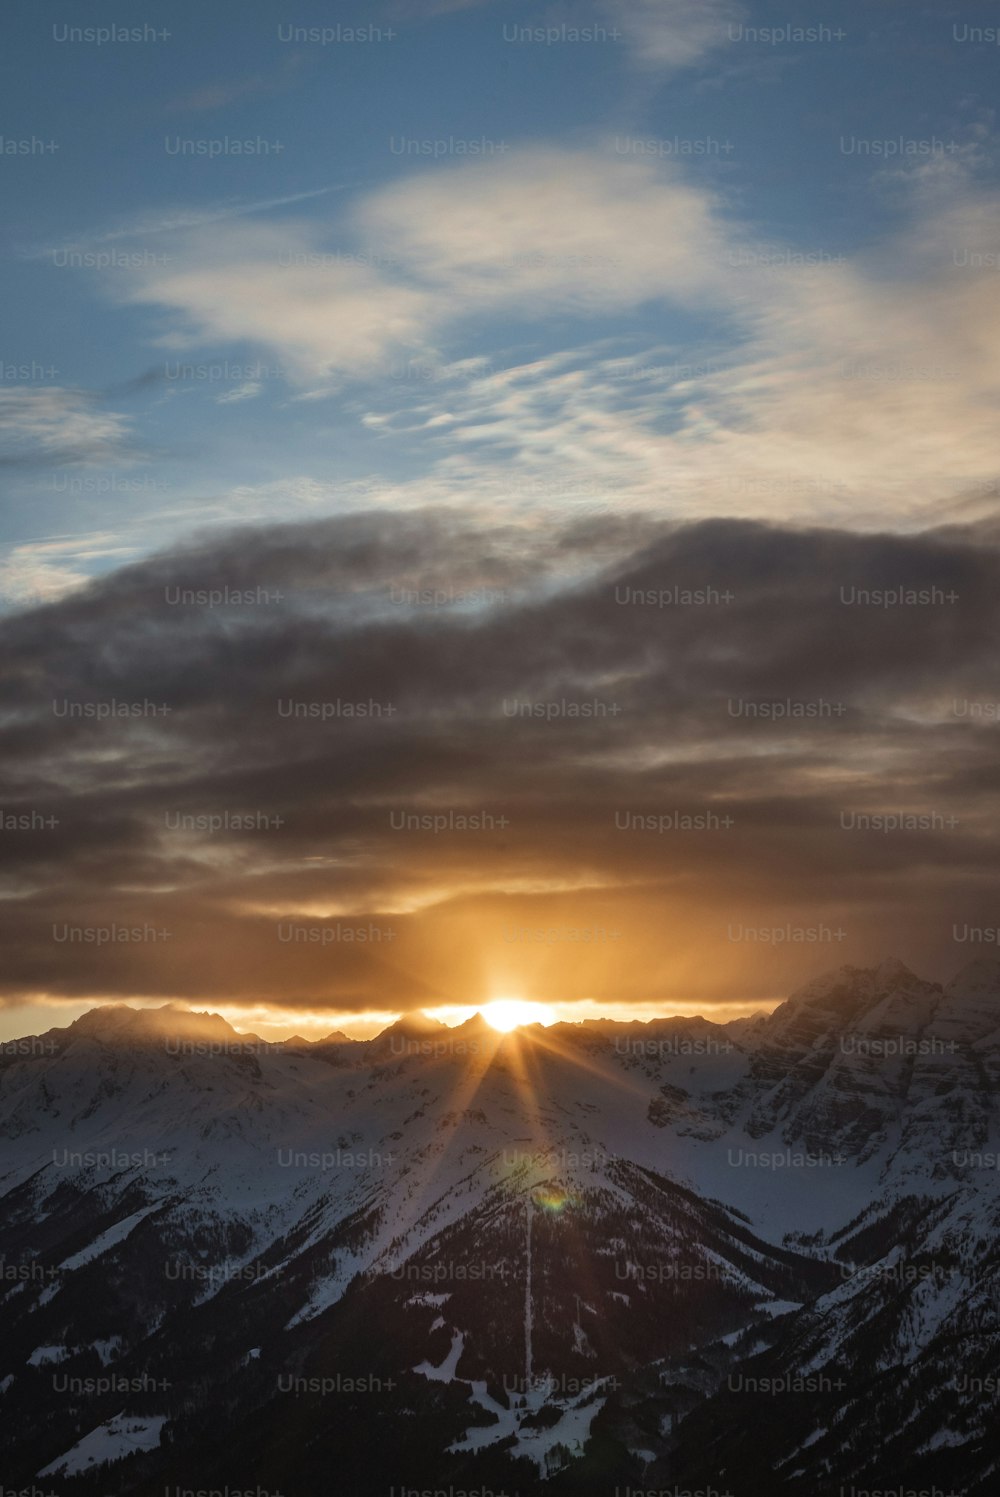 El sol se está poniendo sobre las montañas nevadas